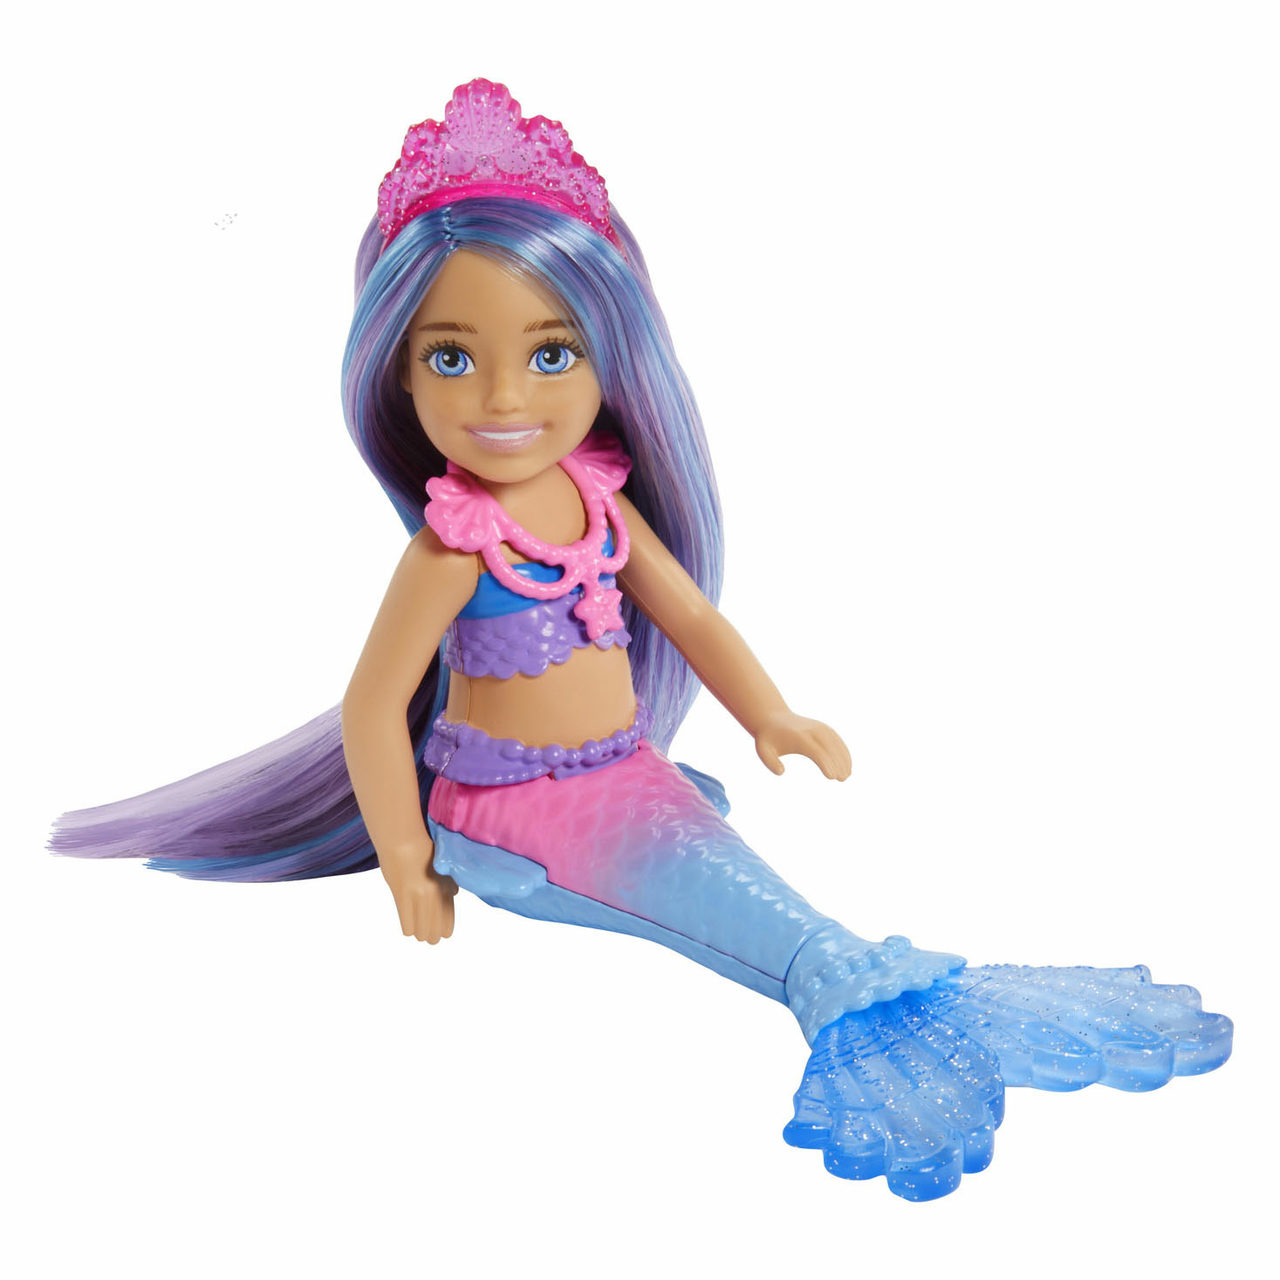 versneller Regelen Bij elkaar passen Barbie Zeemeermin Power Pop Chelsea Mermaid - Het Speelgoedpaleis